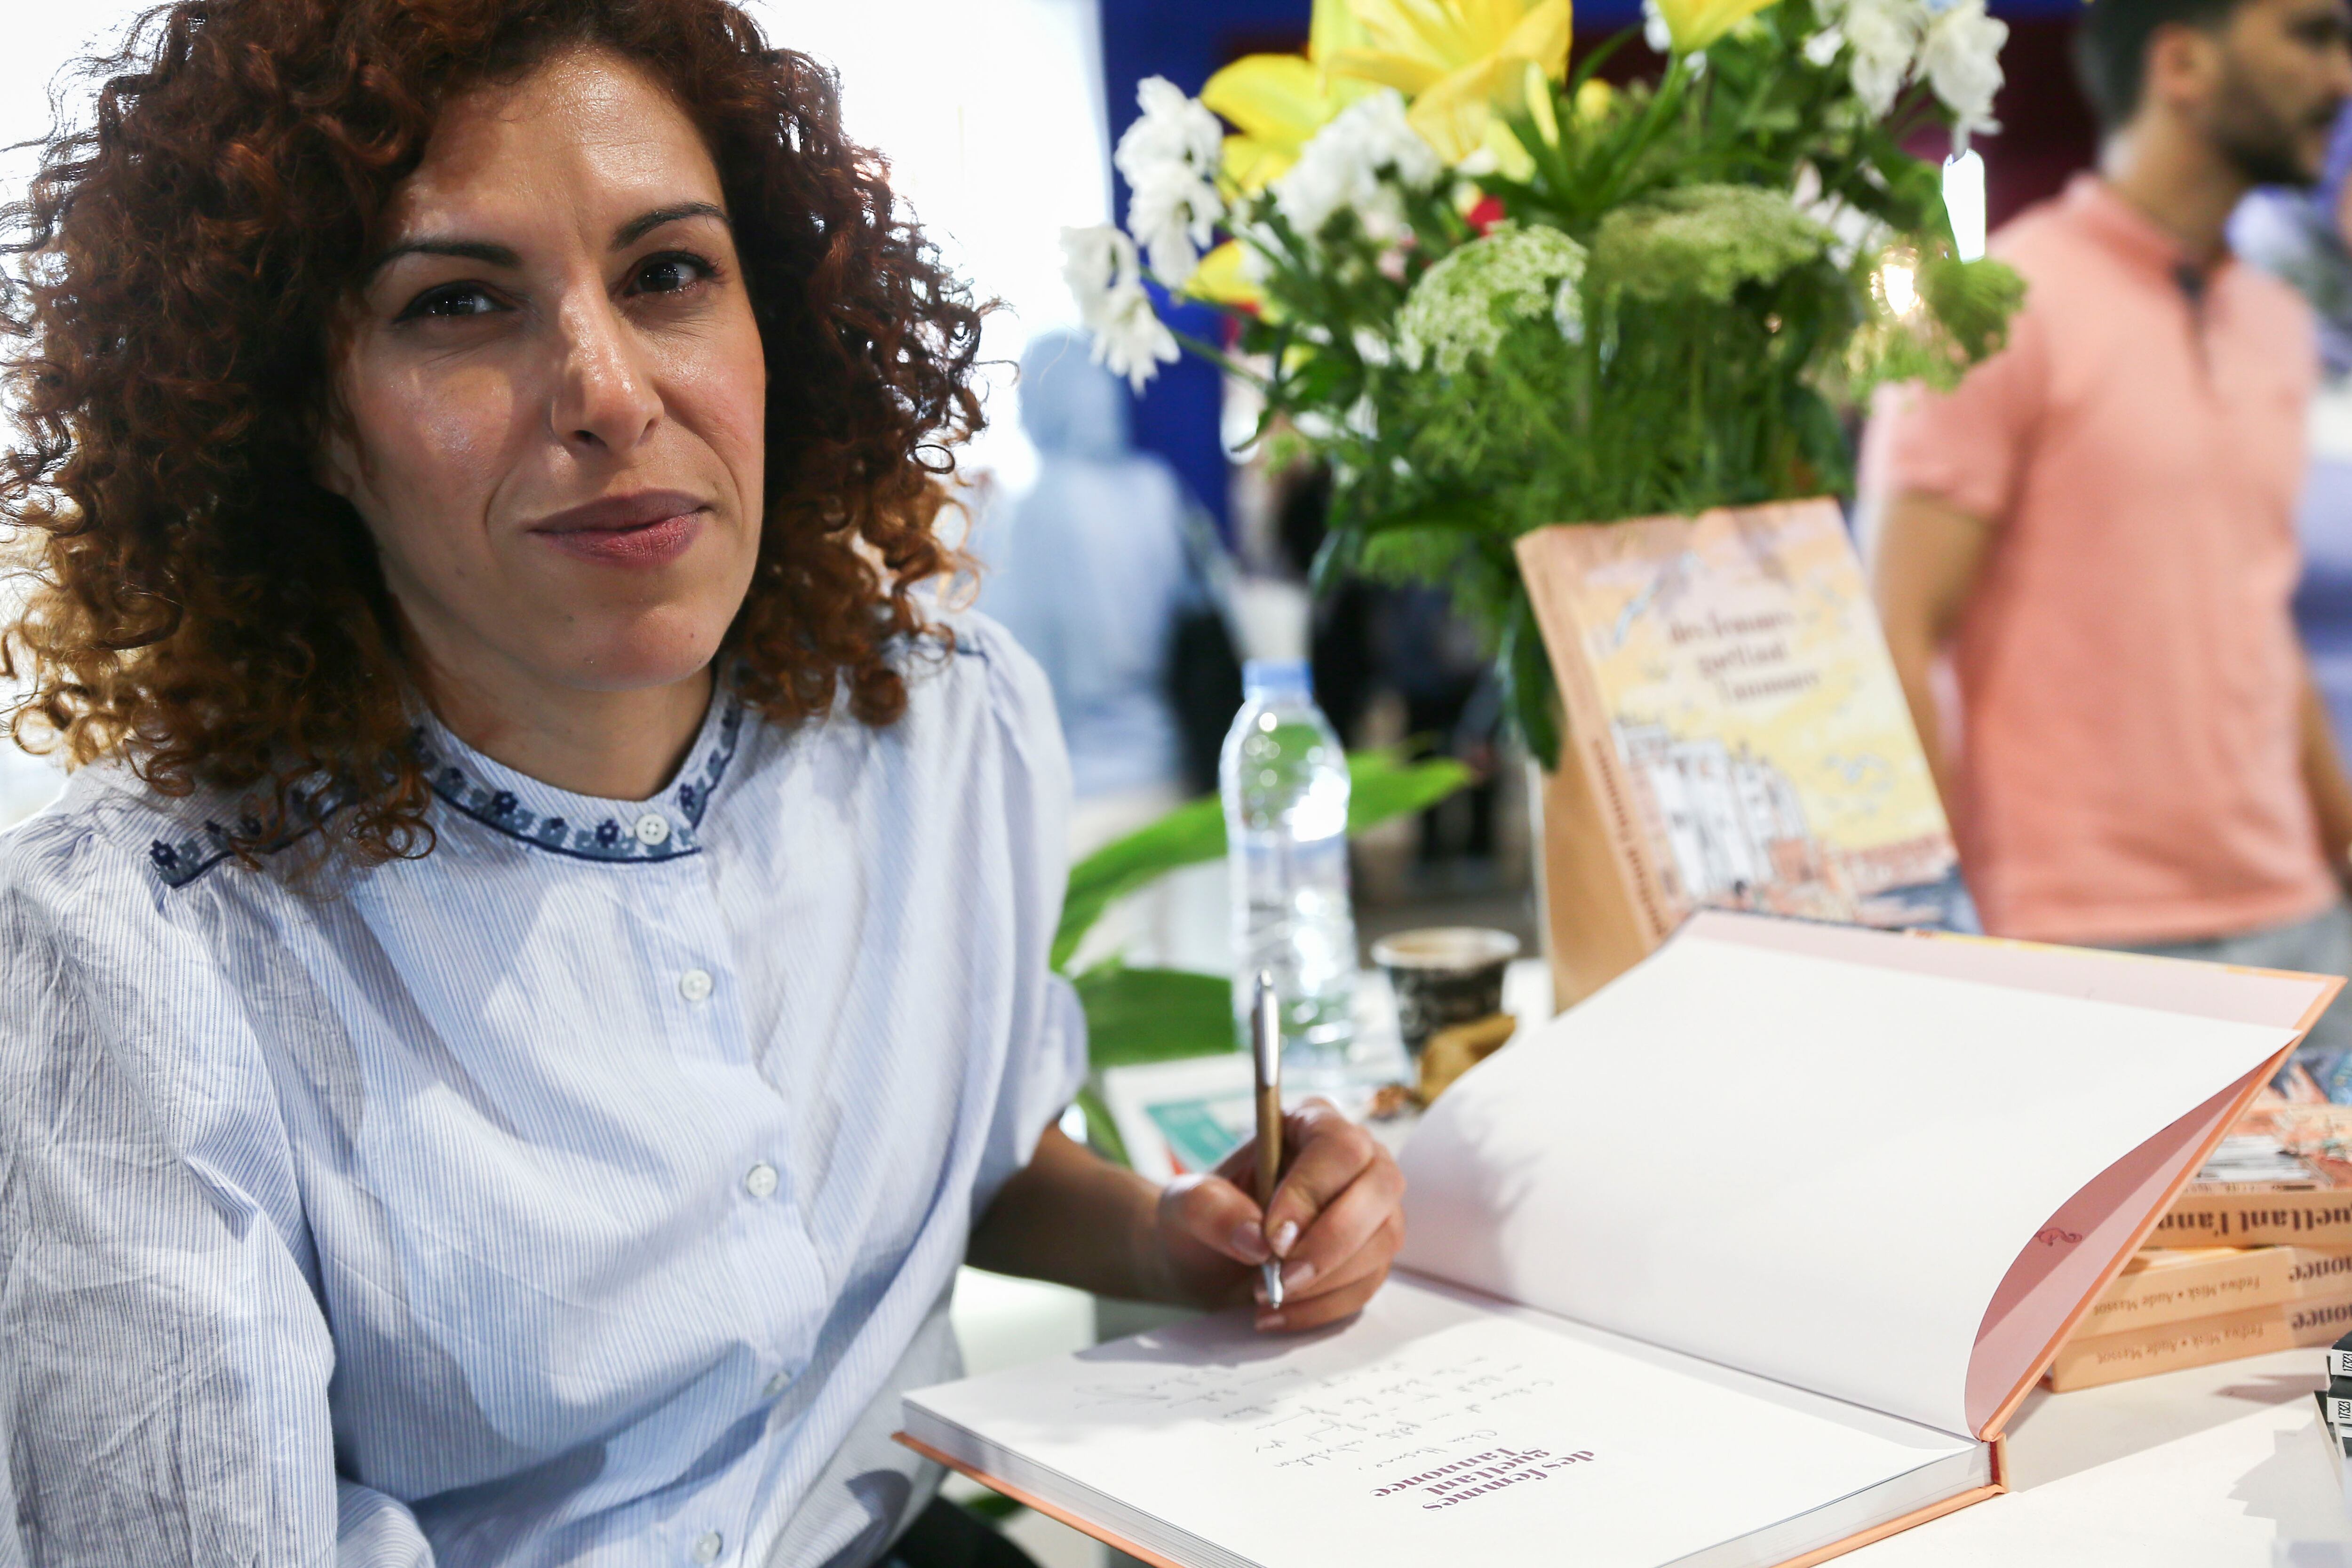 Fedwa Misk, guionista del cómic 'Des femmes guettant l'annonce' (Mujeres esperando el anuncio), que trata sobre la interrupción voluntaria del embarazo en Marruecos, el día 14 en el Salón  Internacional de la Edición y el Libro en Rabat.